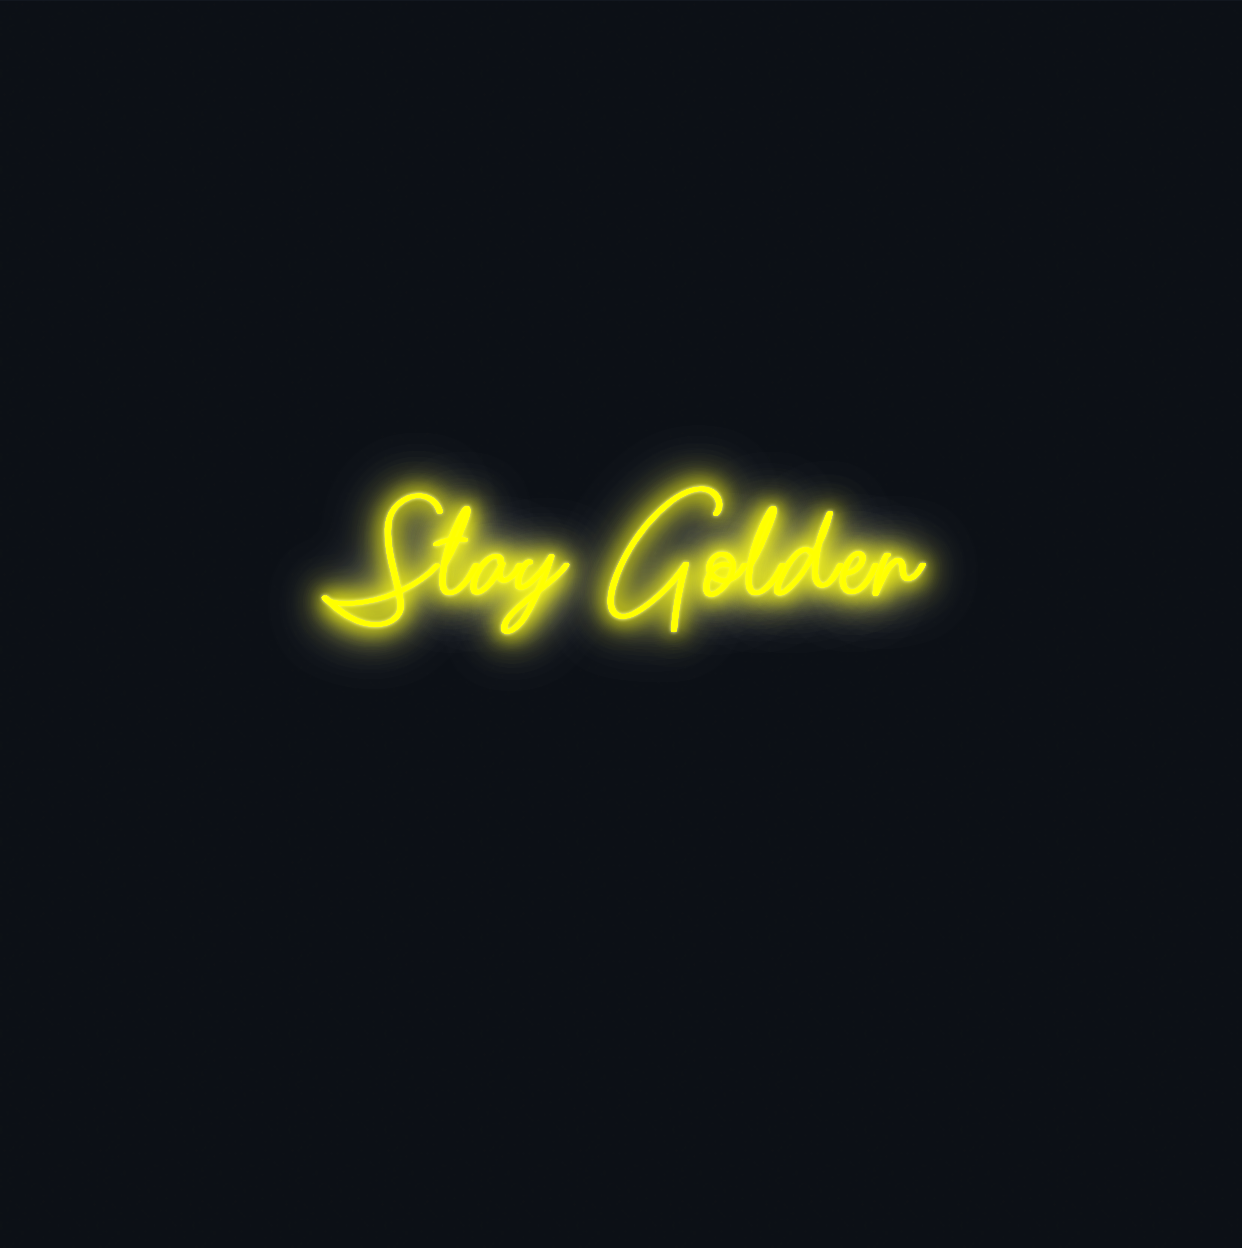 Custom neon sign - Stay Golden